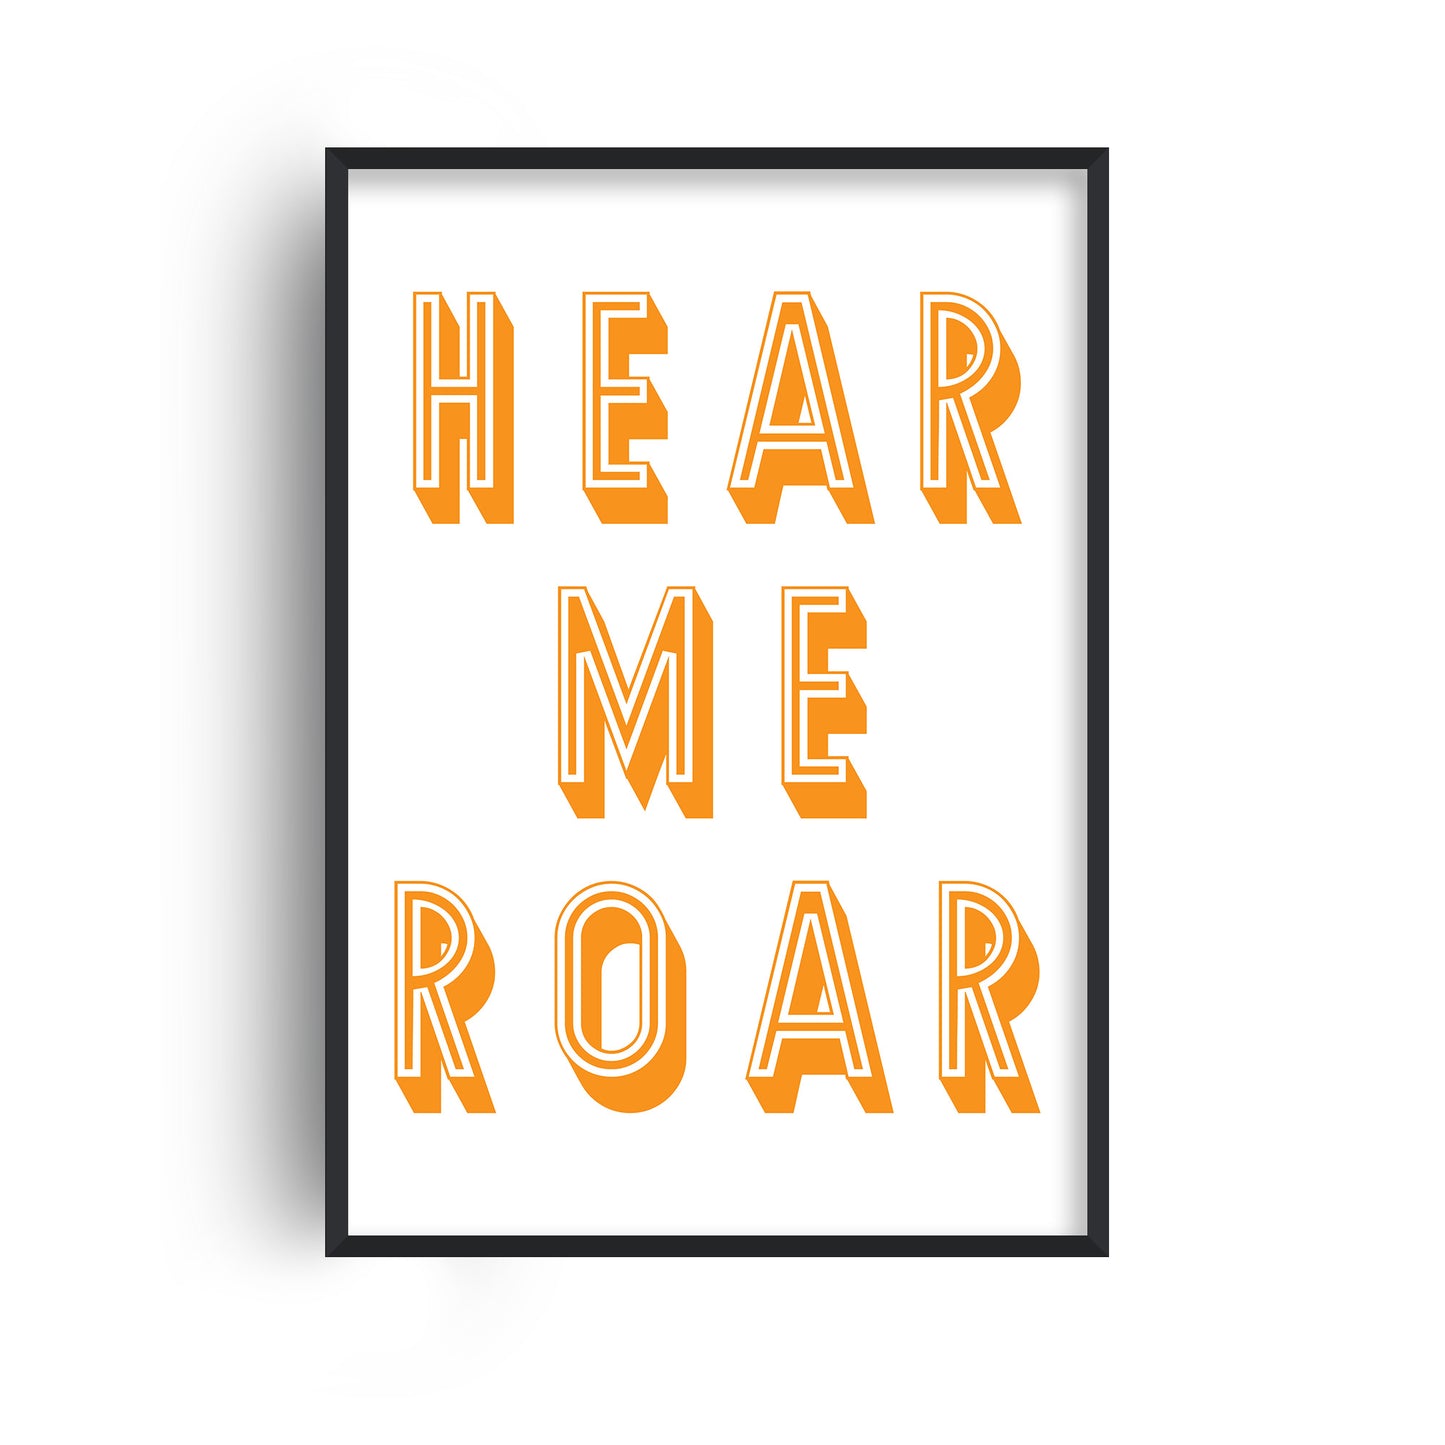 Hear Me Roar Print